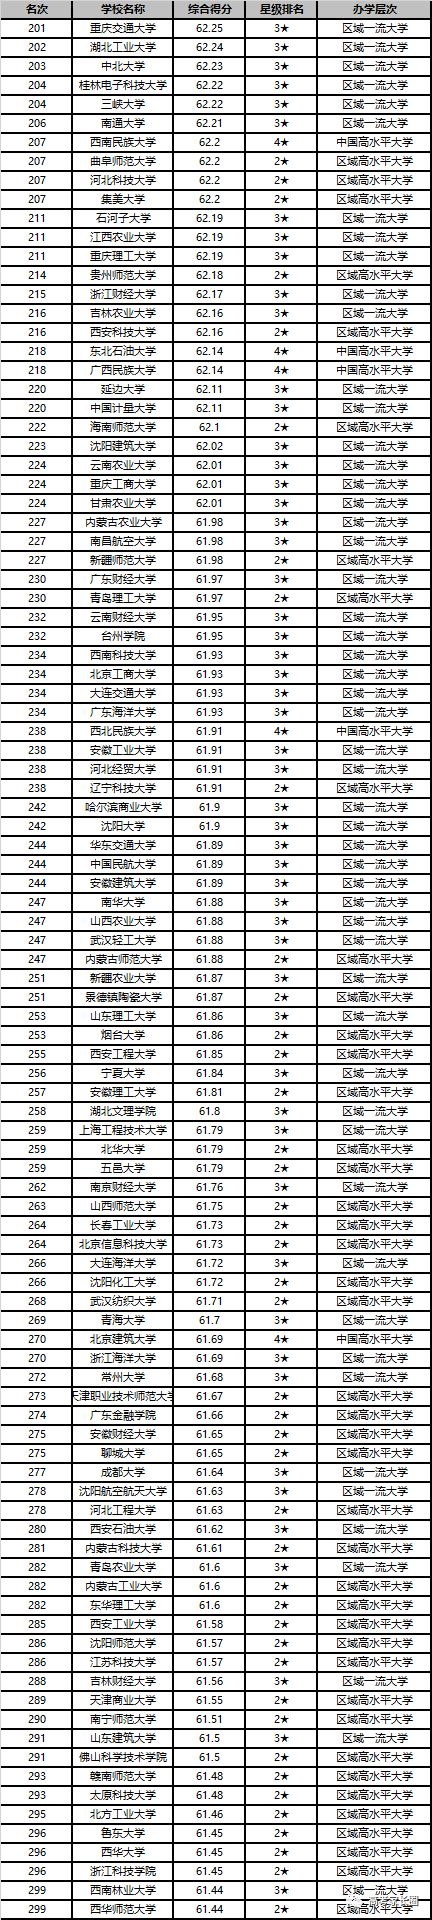 2020中国大学排名1200强发布!北京大学连续13年夺魁